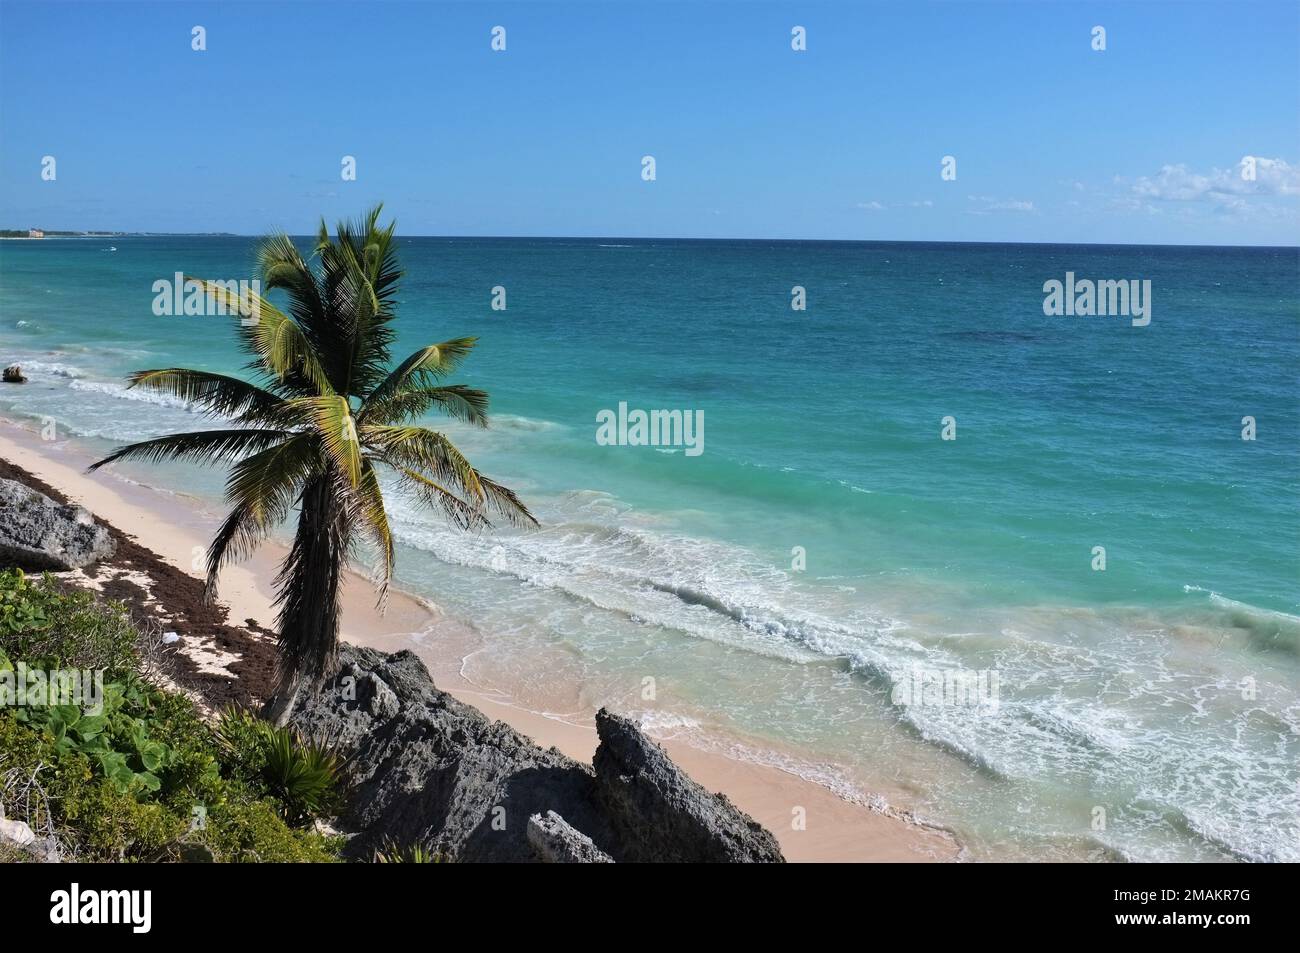 Mexican coastline in Tulum, Mexico. Stock Photo